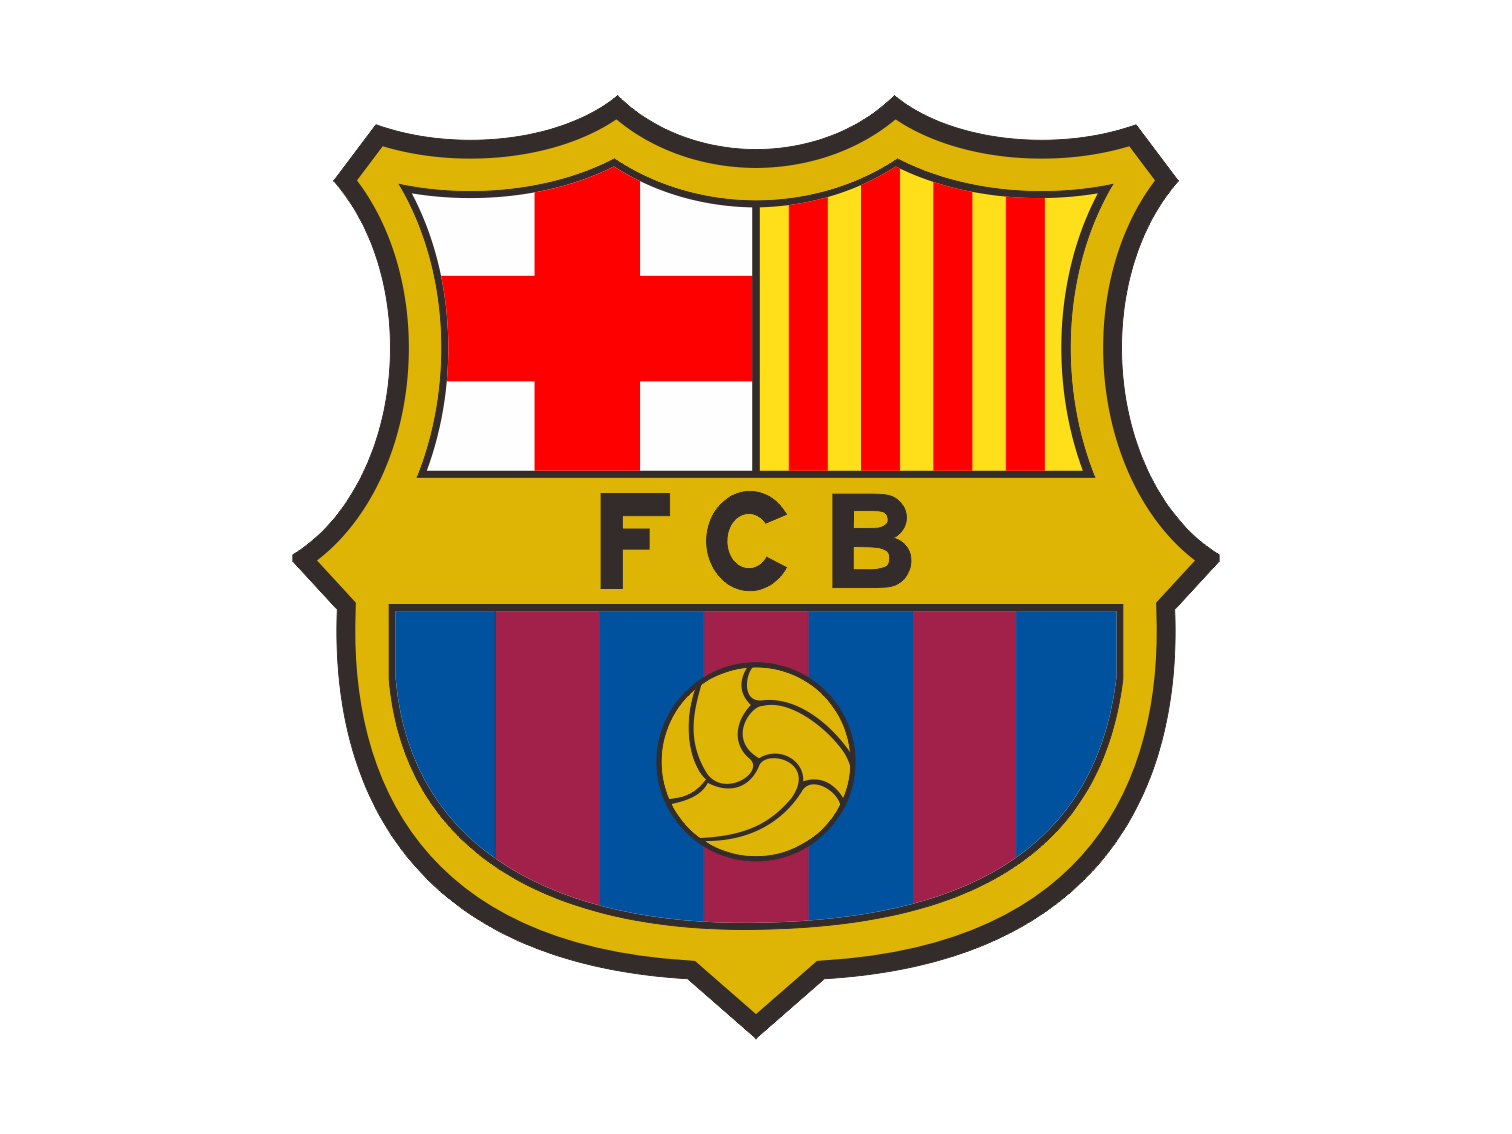 Barca Logo No Background